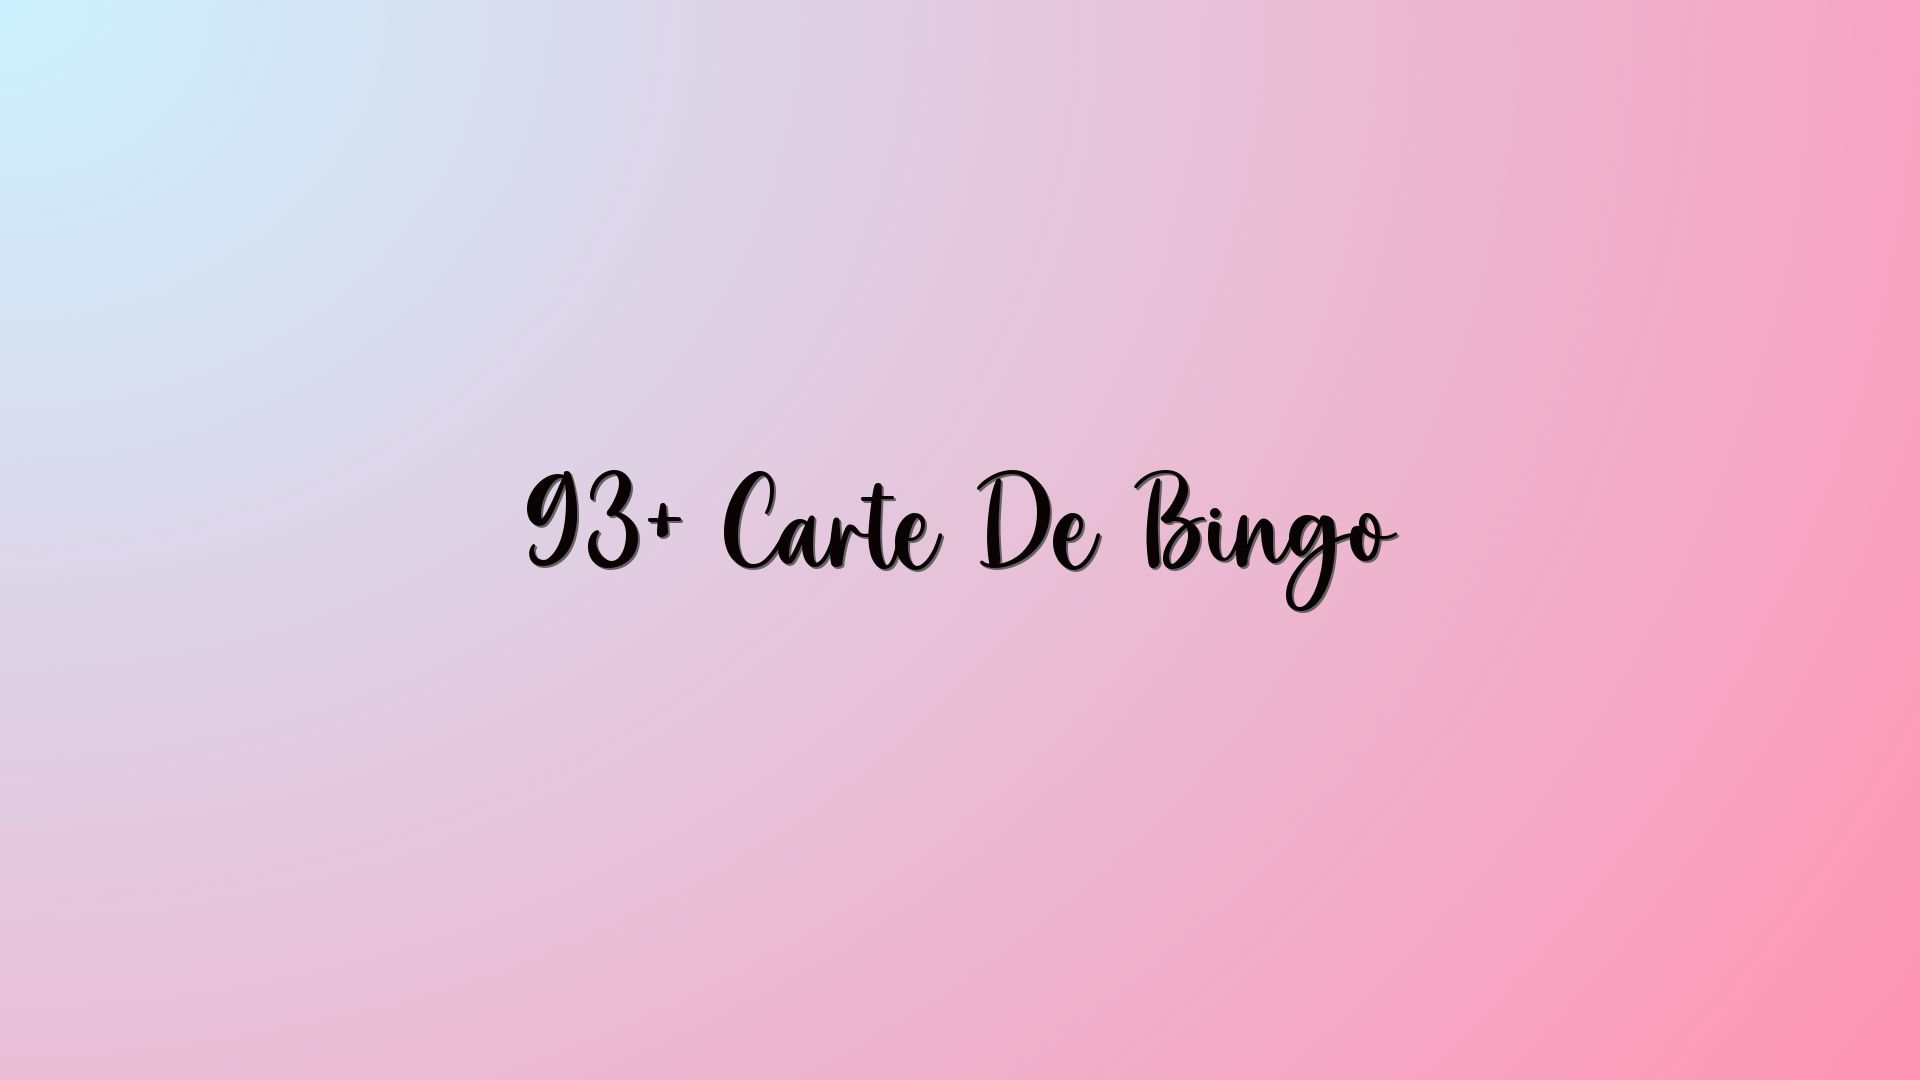 93+ Carte De Bingo